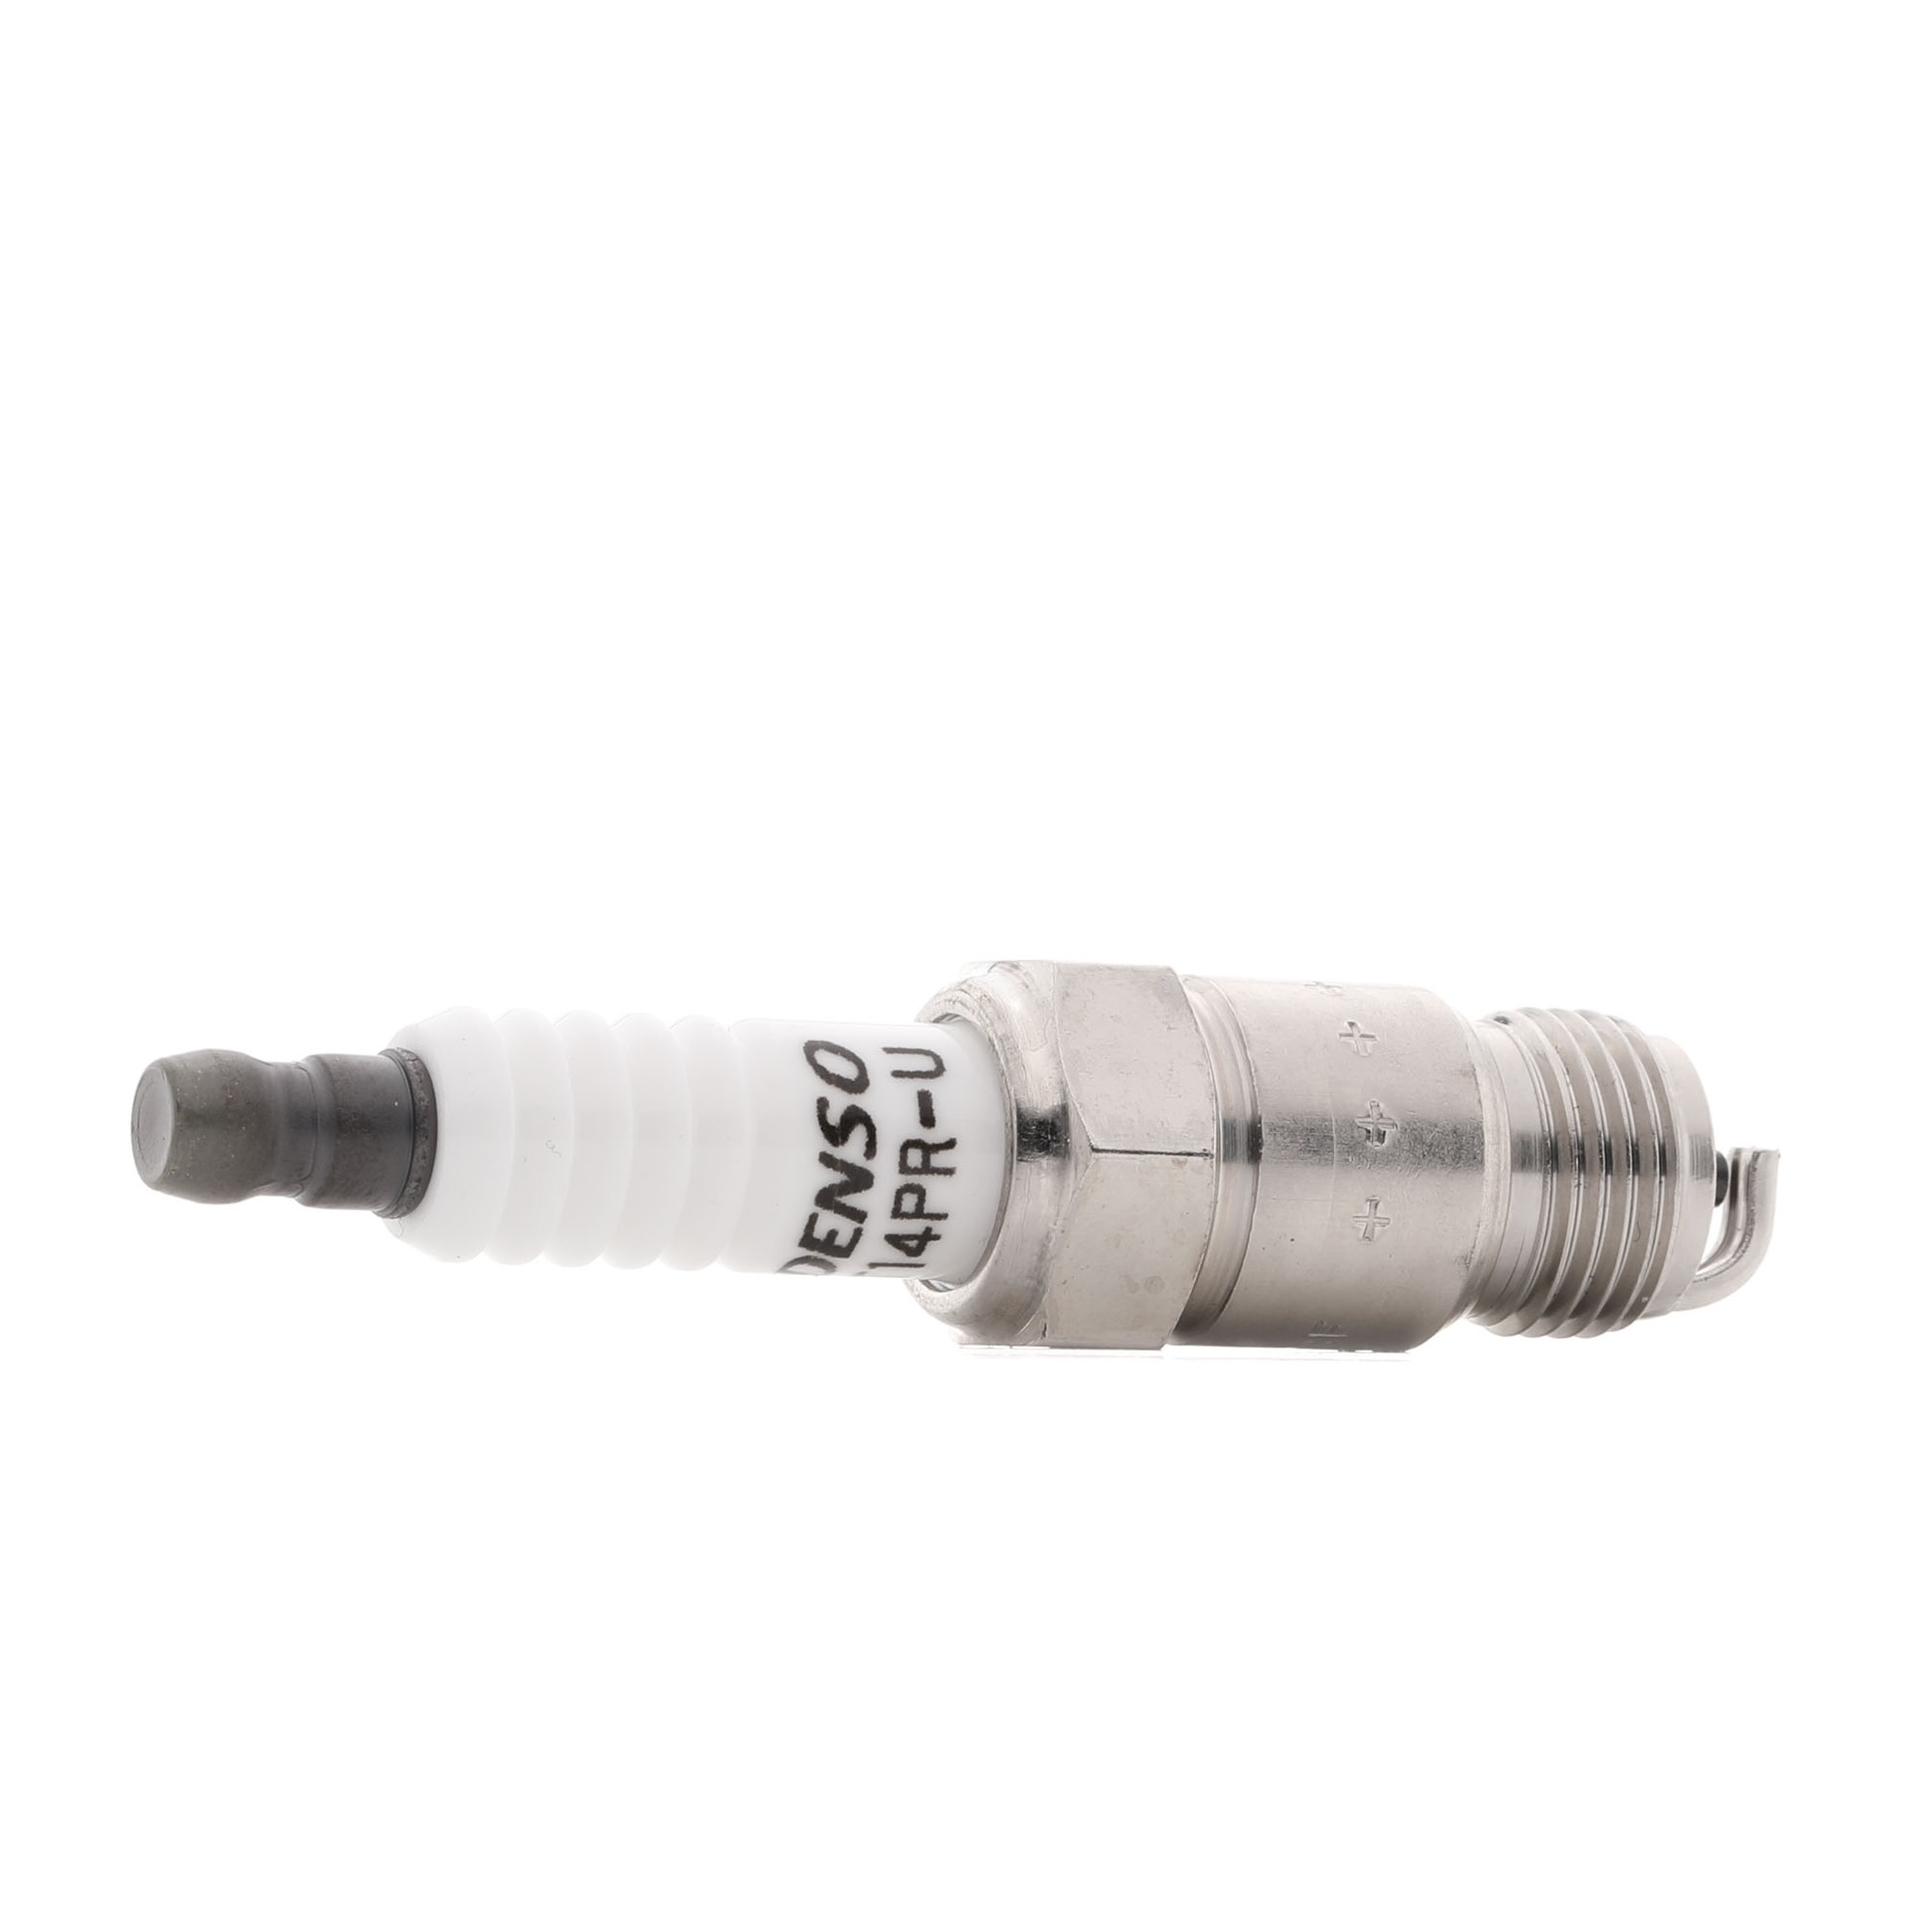 Original DENSO 5020 Spark plug set T14PR-U for CHEVROLET BLAZER S10